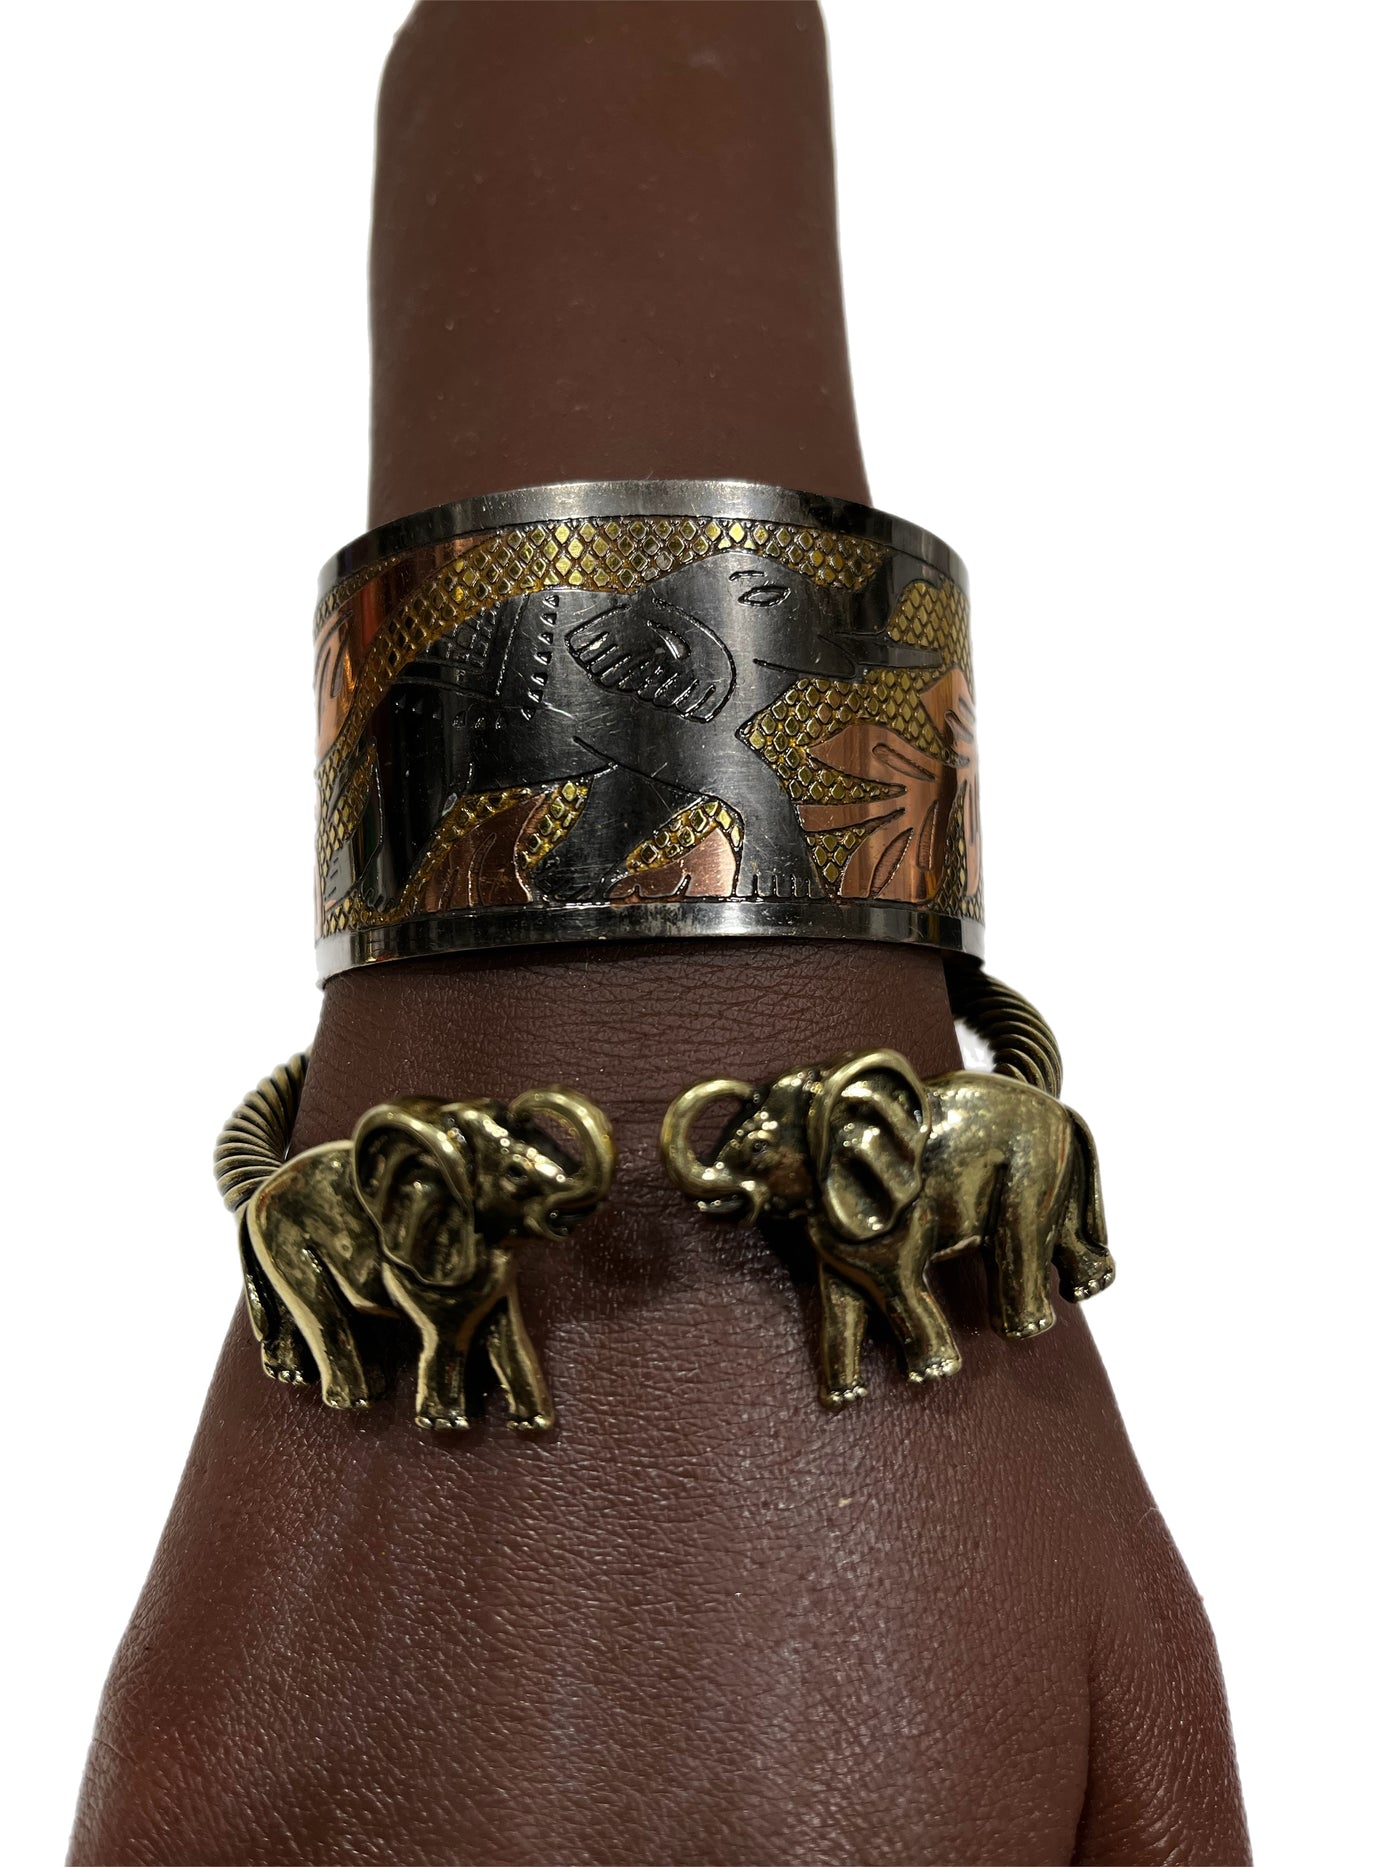 Edugye and Two Elephant bracelet set